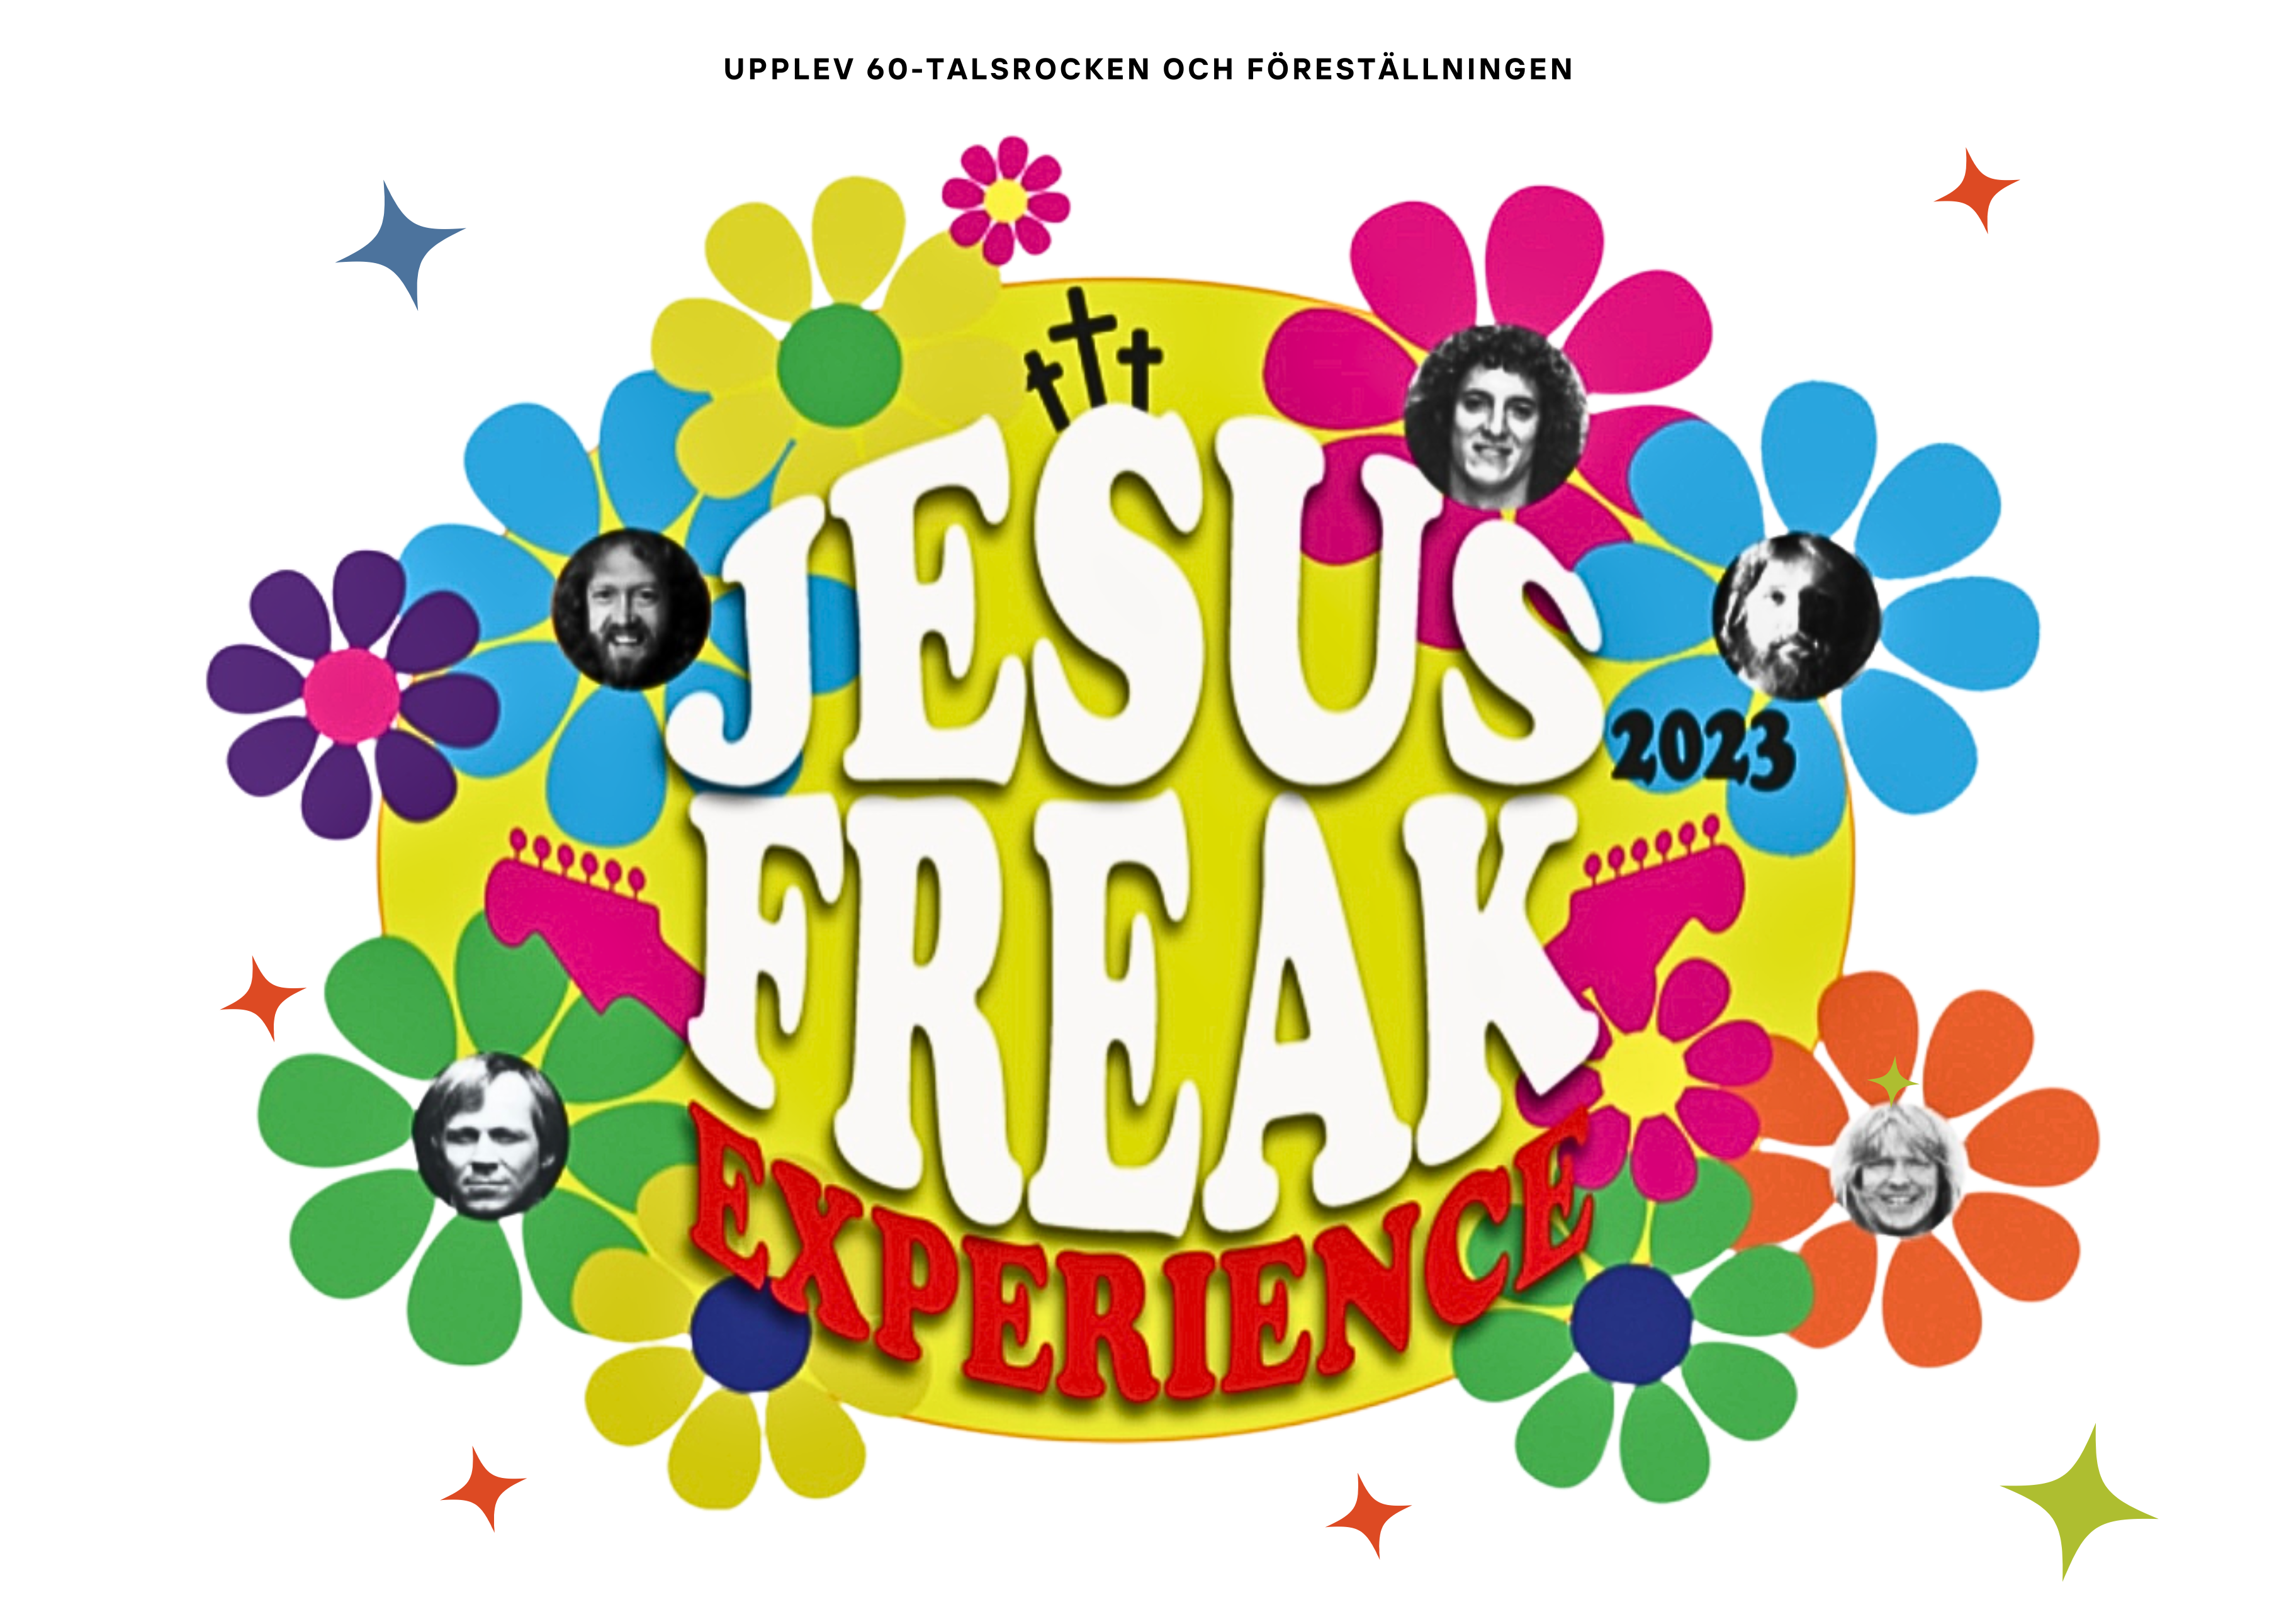 Konsert med ”Jesus Freak Experience”